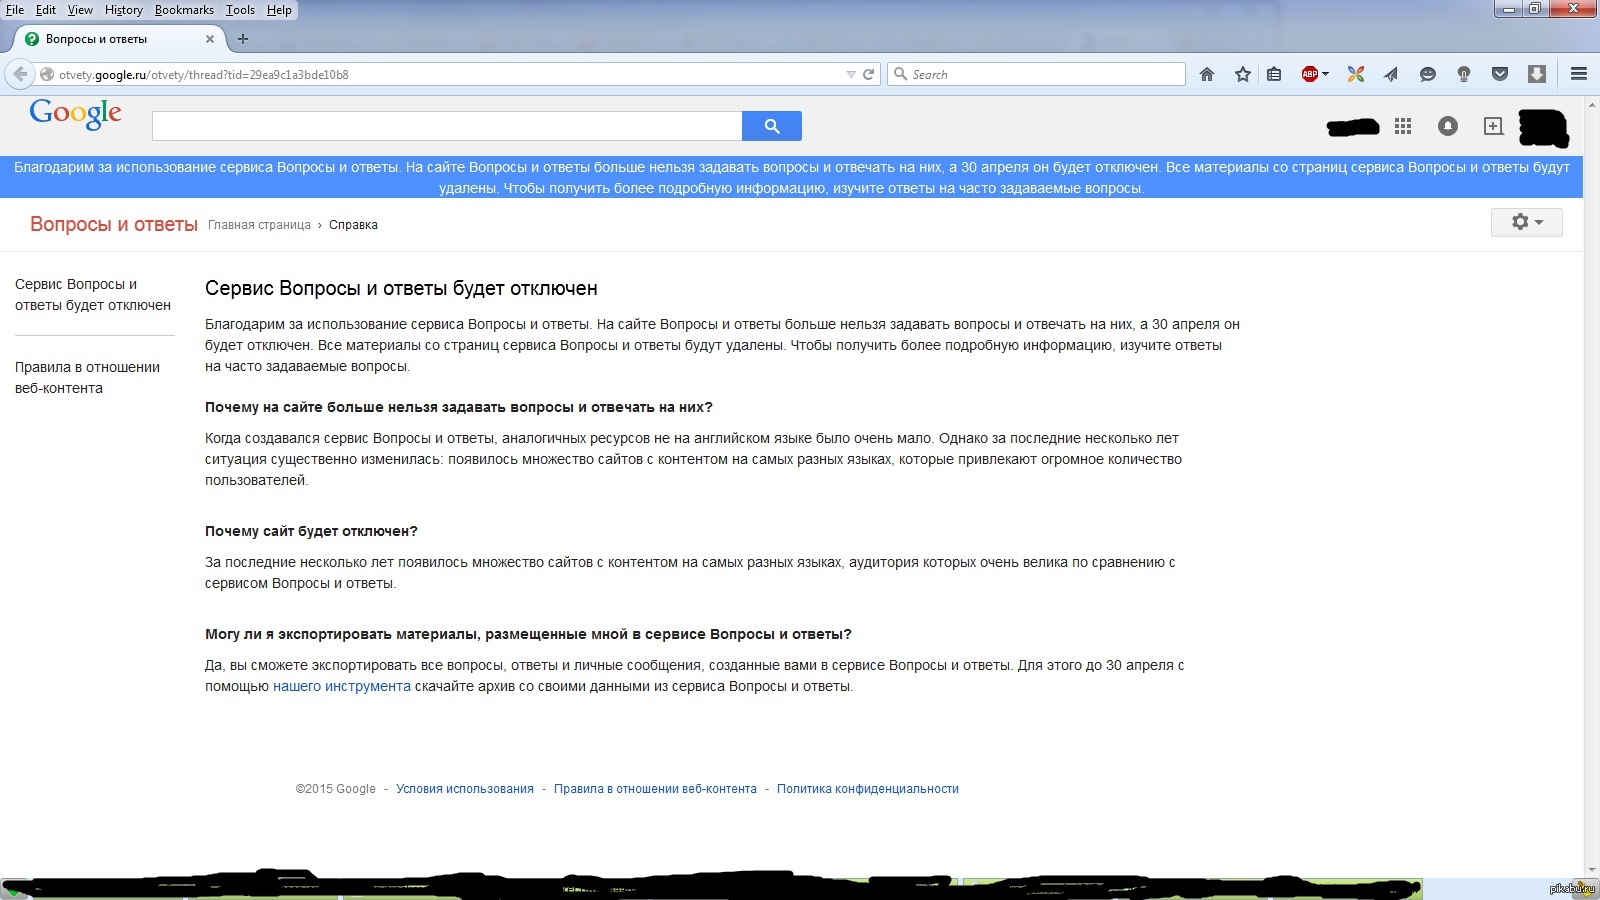 Ответы на тест hh ru. Гугл вопросы и ответы. Часто задаваемые вопросы на сайте. Ответы на часто задаваемые вопросы на сайте. Google ответы 25.